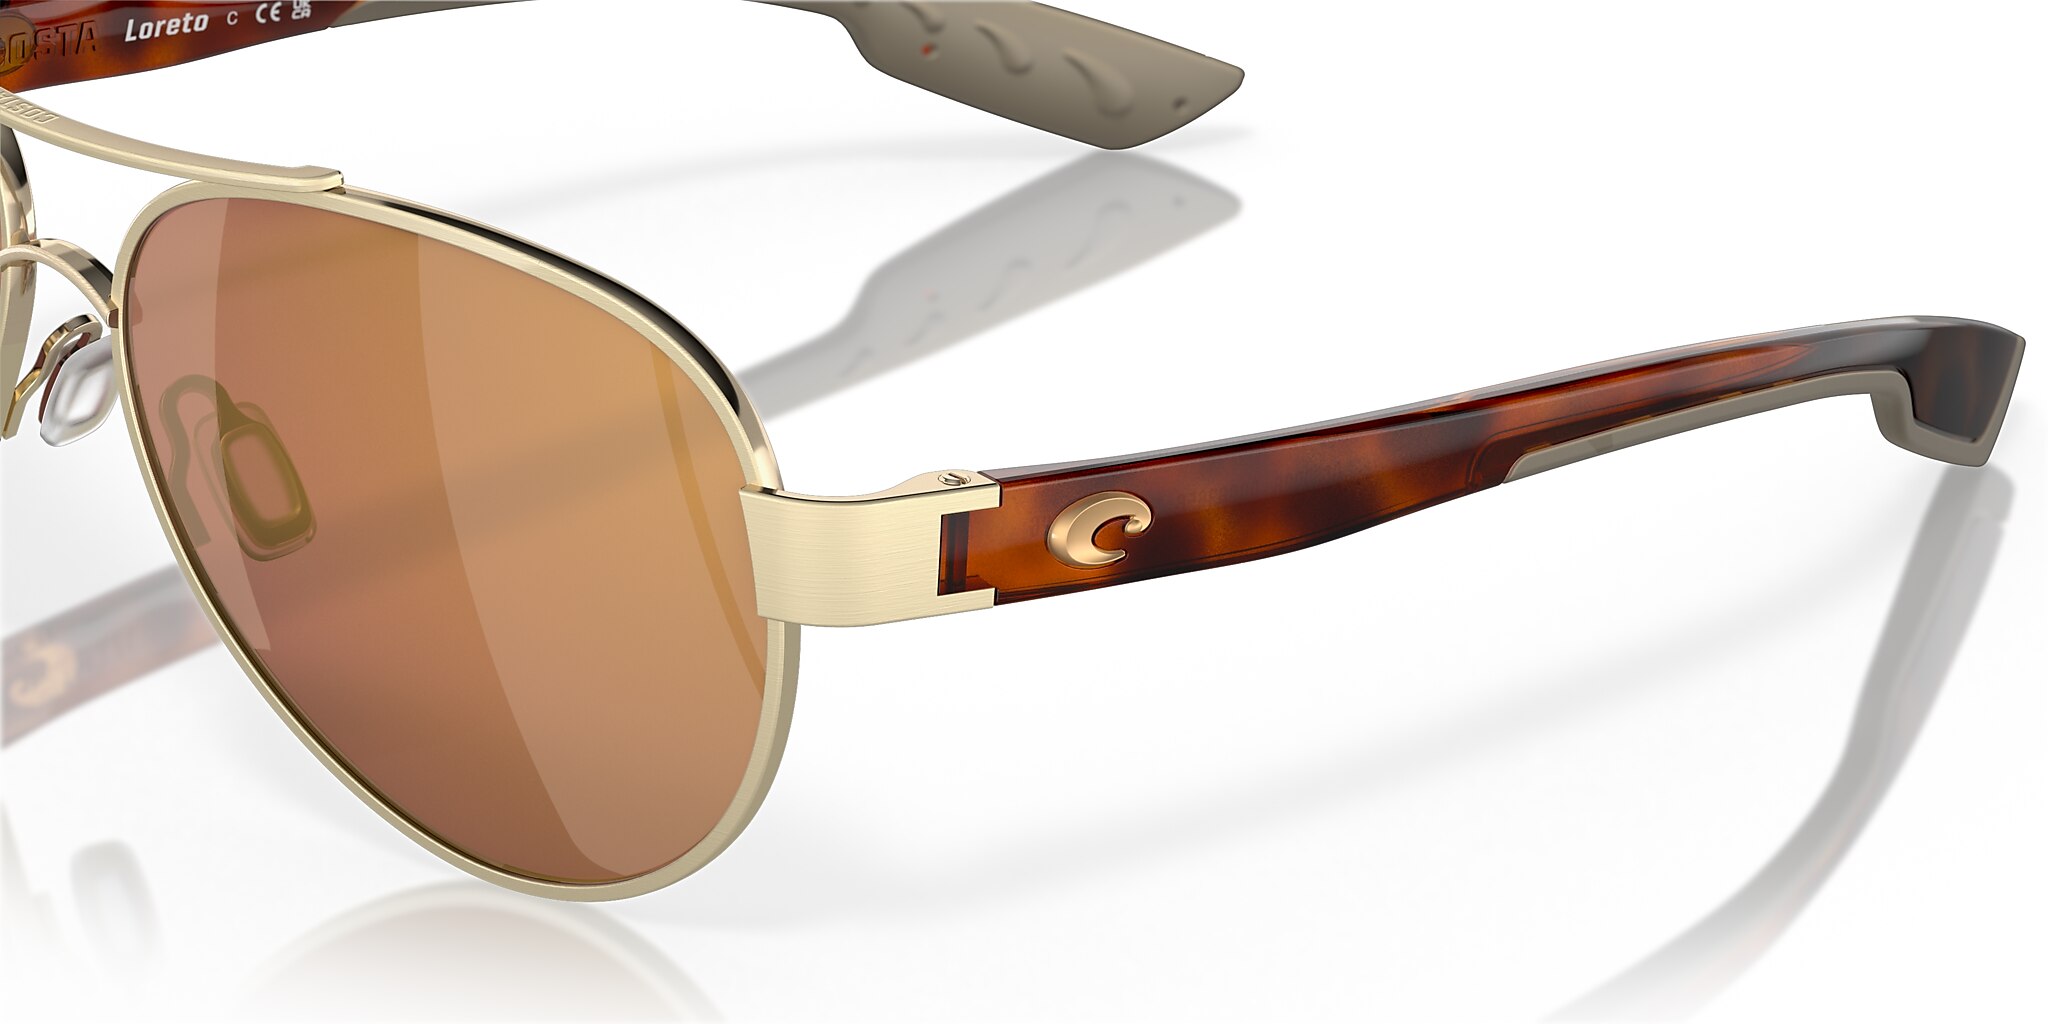 Loreto Polarized Sunglasses in Gold Mirror | Costa Del Mar®